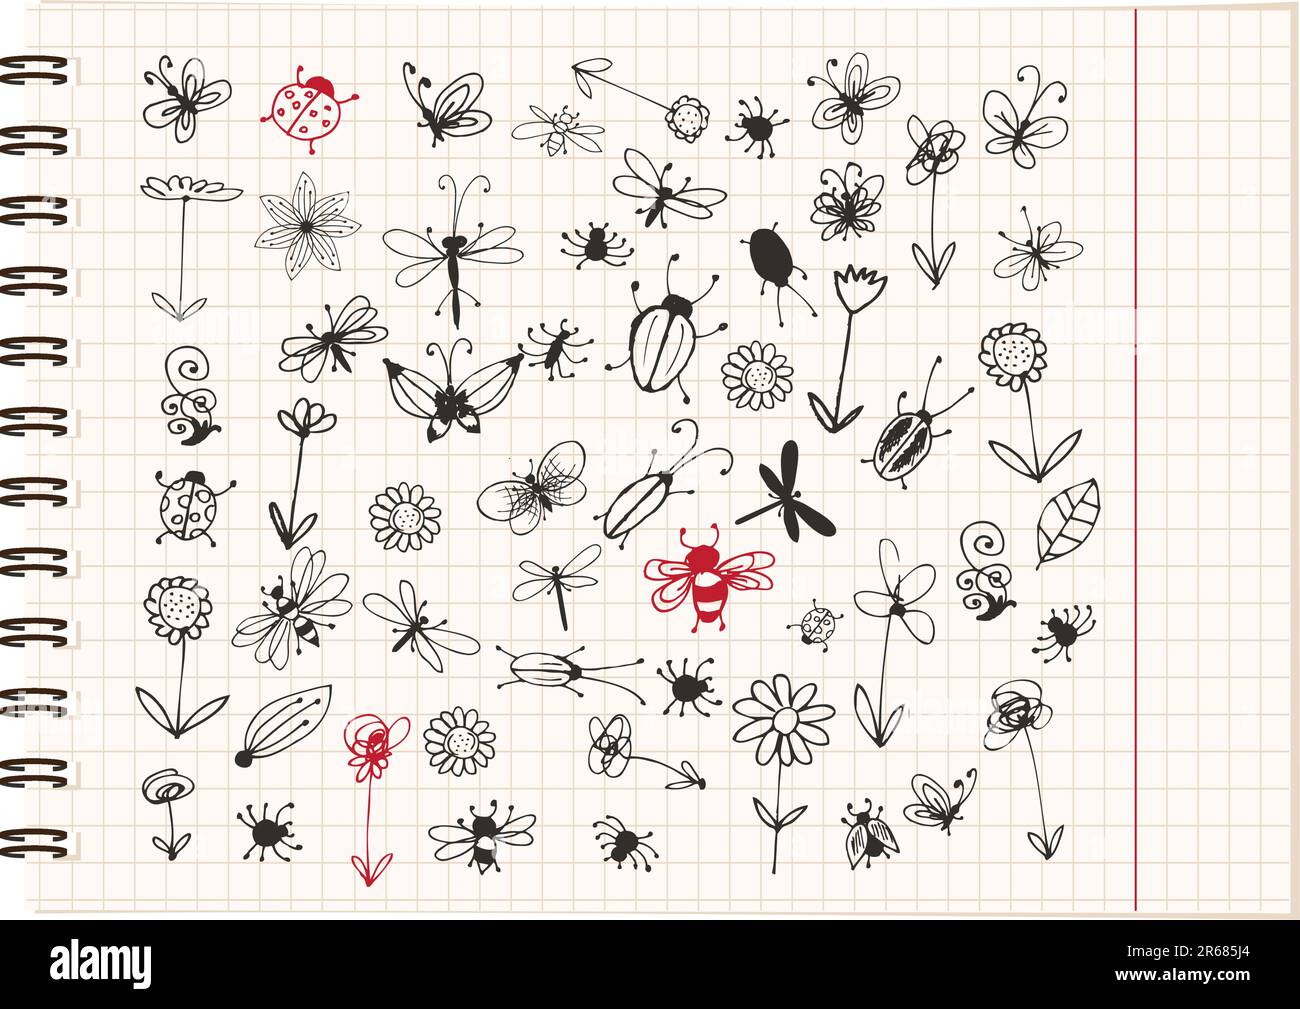 Croquis d'insectes pour collection votre conception Illustration de Vecteur